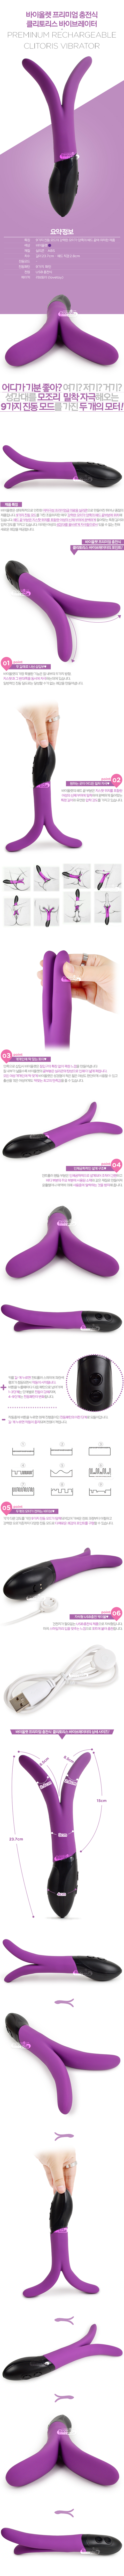 [9단 진동] 바이올렛 프리미엄 충전식 클리토리스 바이브레이터(Lovetoy Violet Preminum Rechargeable Clitoris Vibrator) - 러브토이(LV2702)